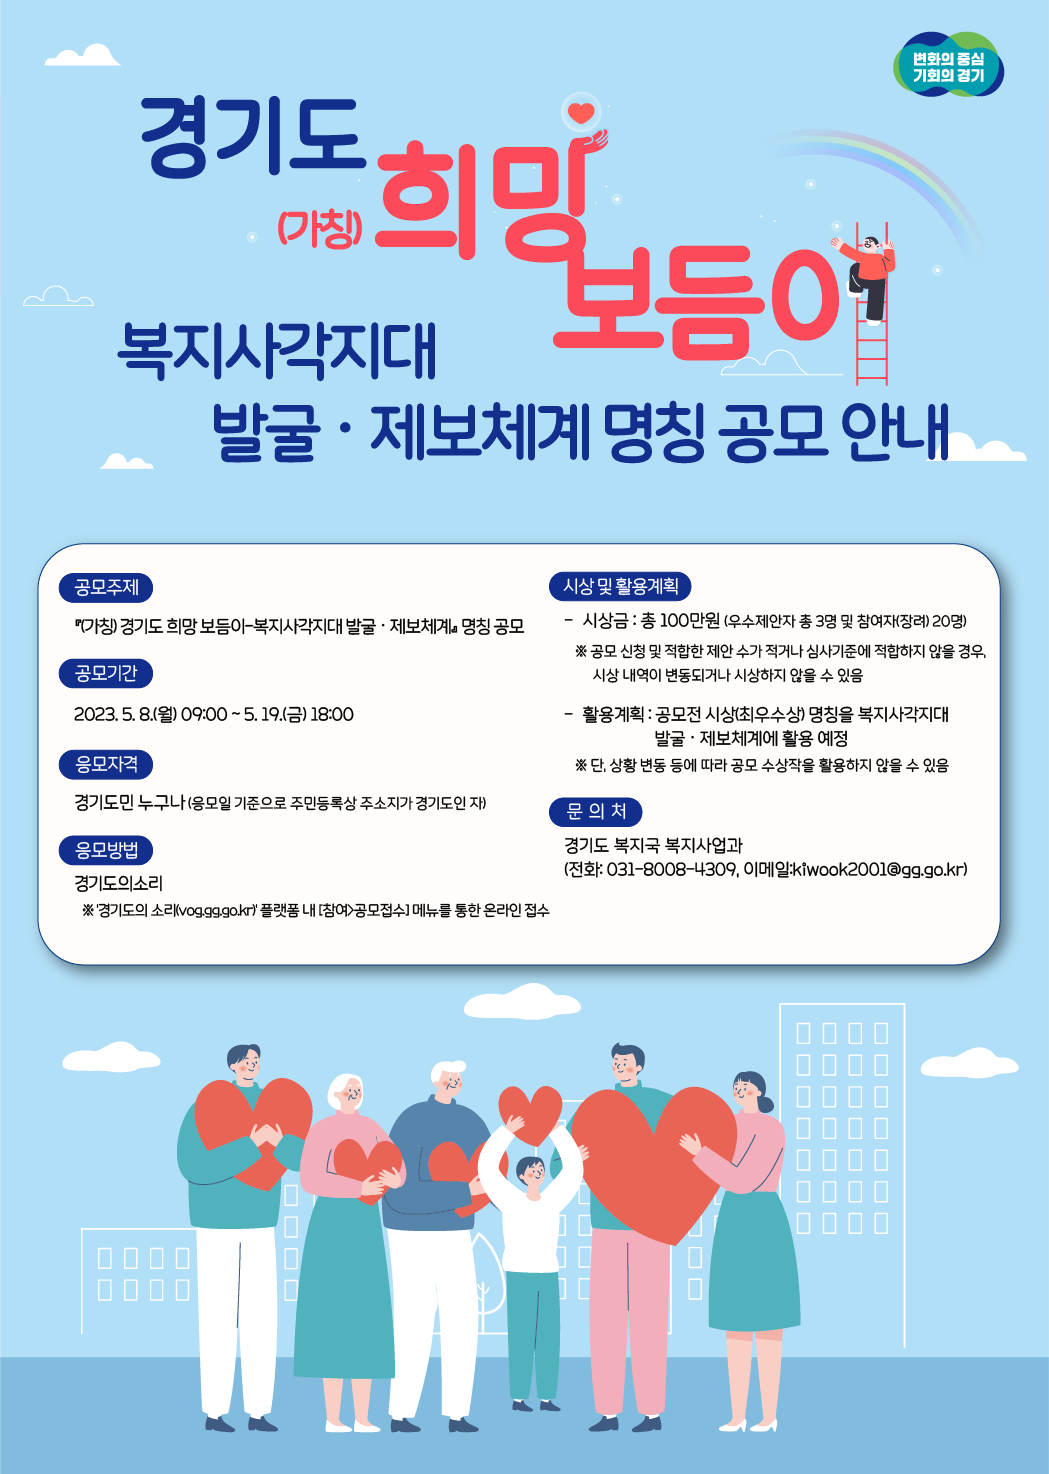 「(가칭) 경기도 희망 보듬이-복지사각지대 발굴·제보체계」 명칭 공모 안내.hwpx